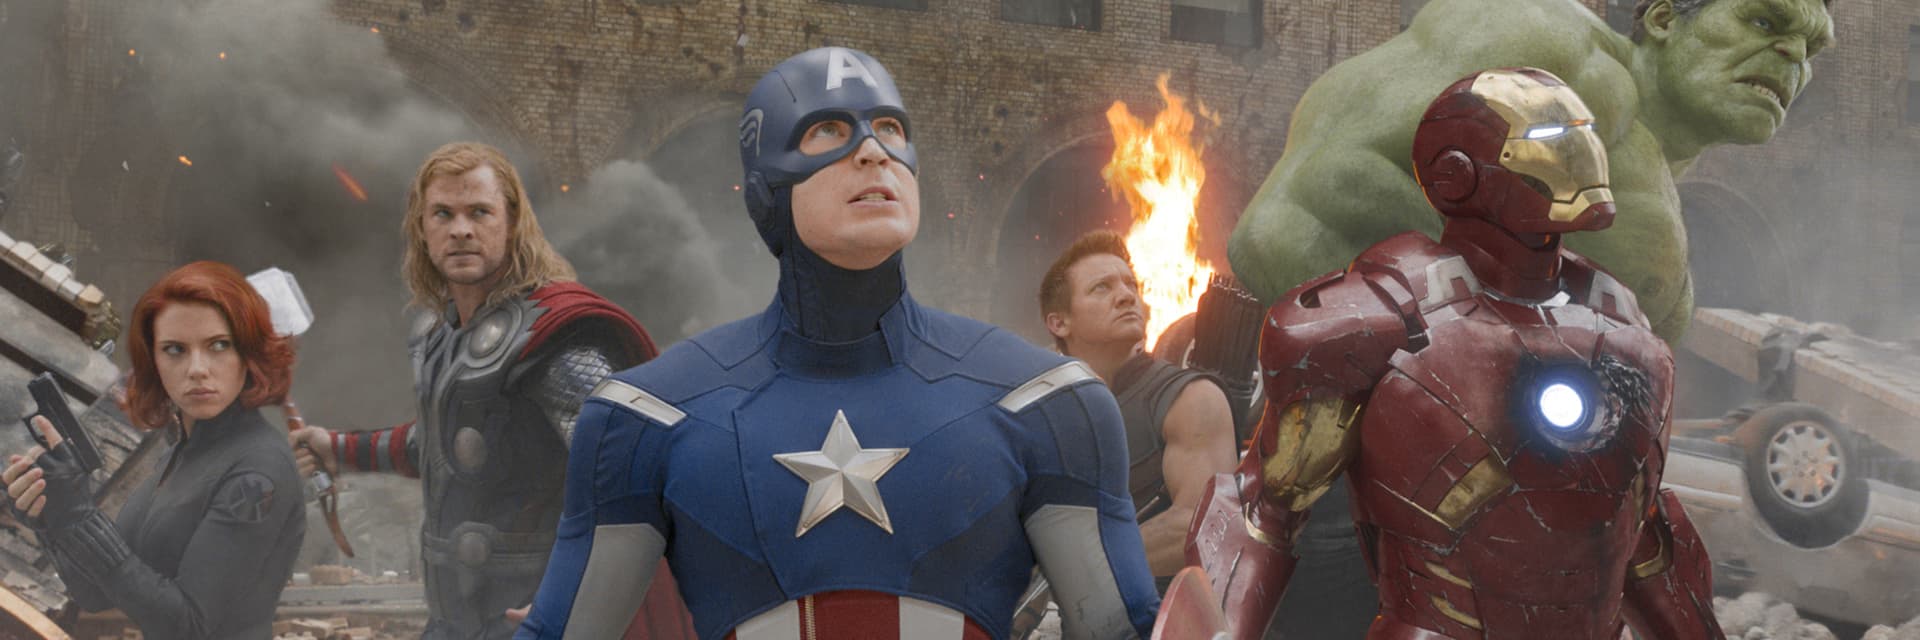 Avengers On Screen Members, Enemies, Powers | Marvel